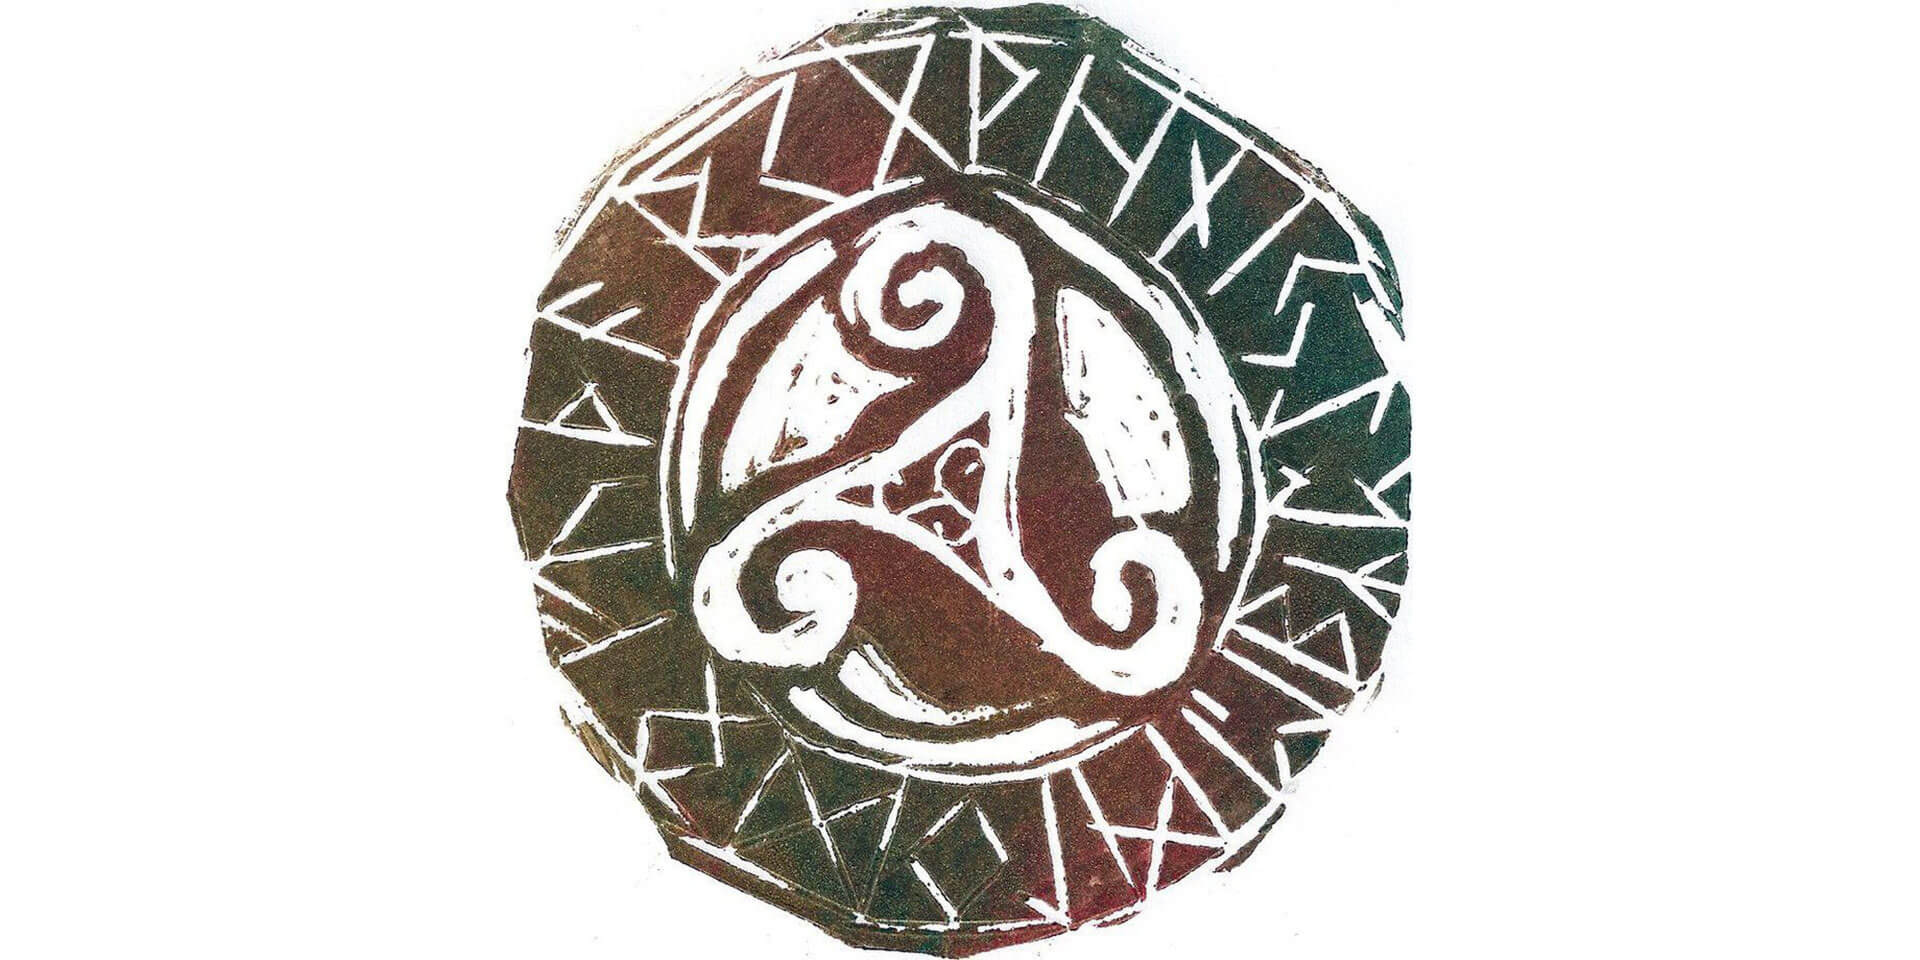 Corbeau Viking : Symbole et Signification dans la Culture Nordique